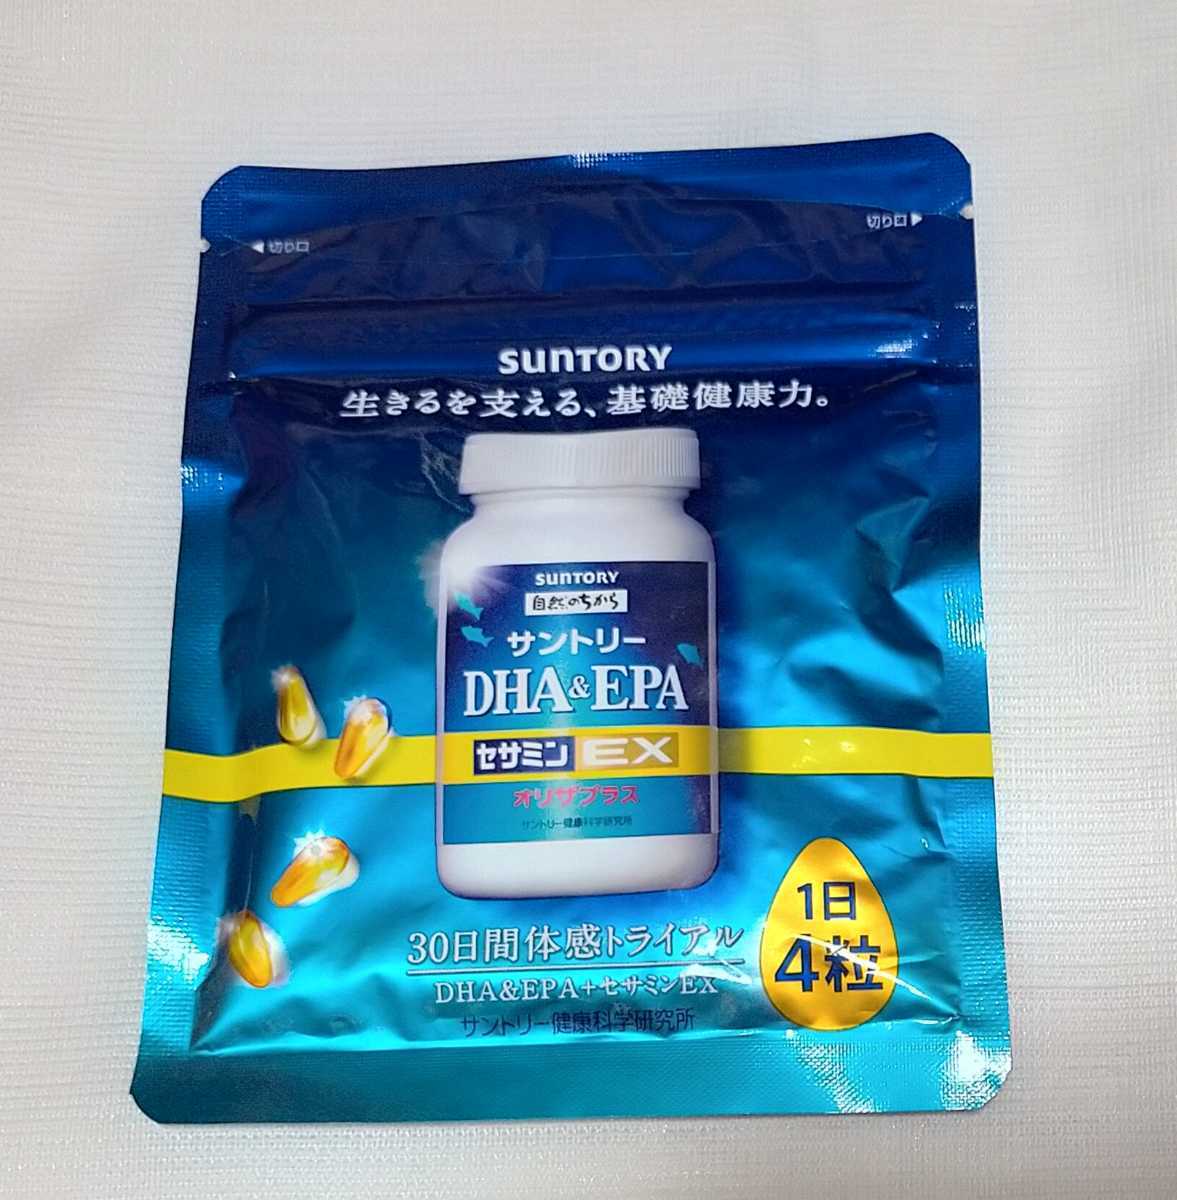 オリジナル ☆送料込み サントリー DHA&EPA セサミンEX 4袋セット 健康